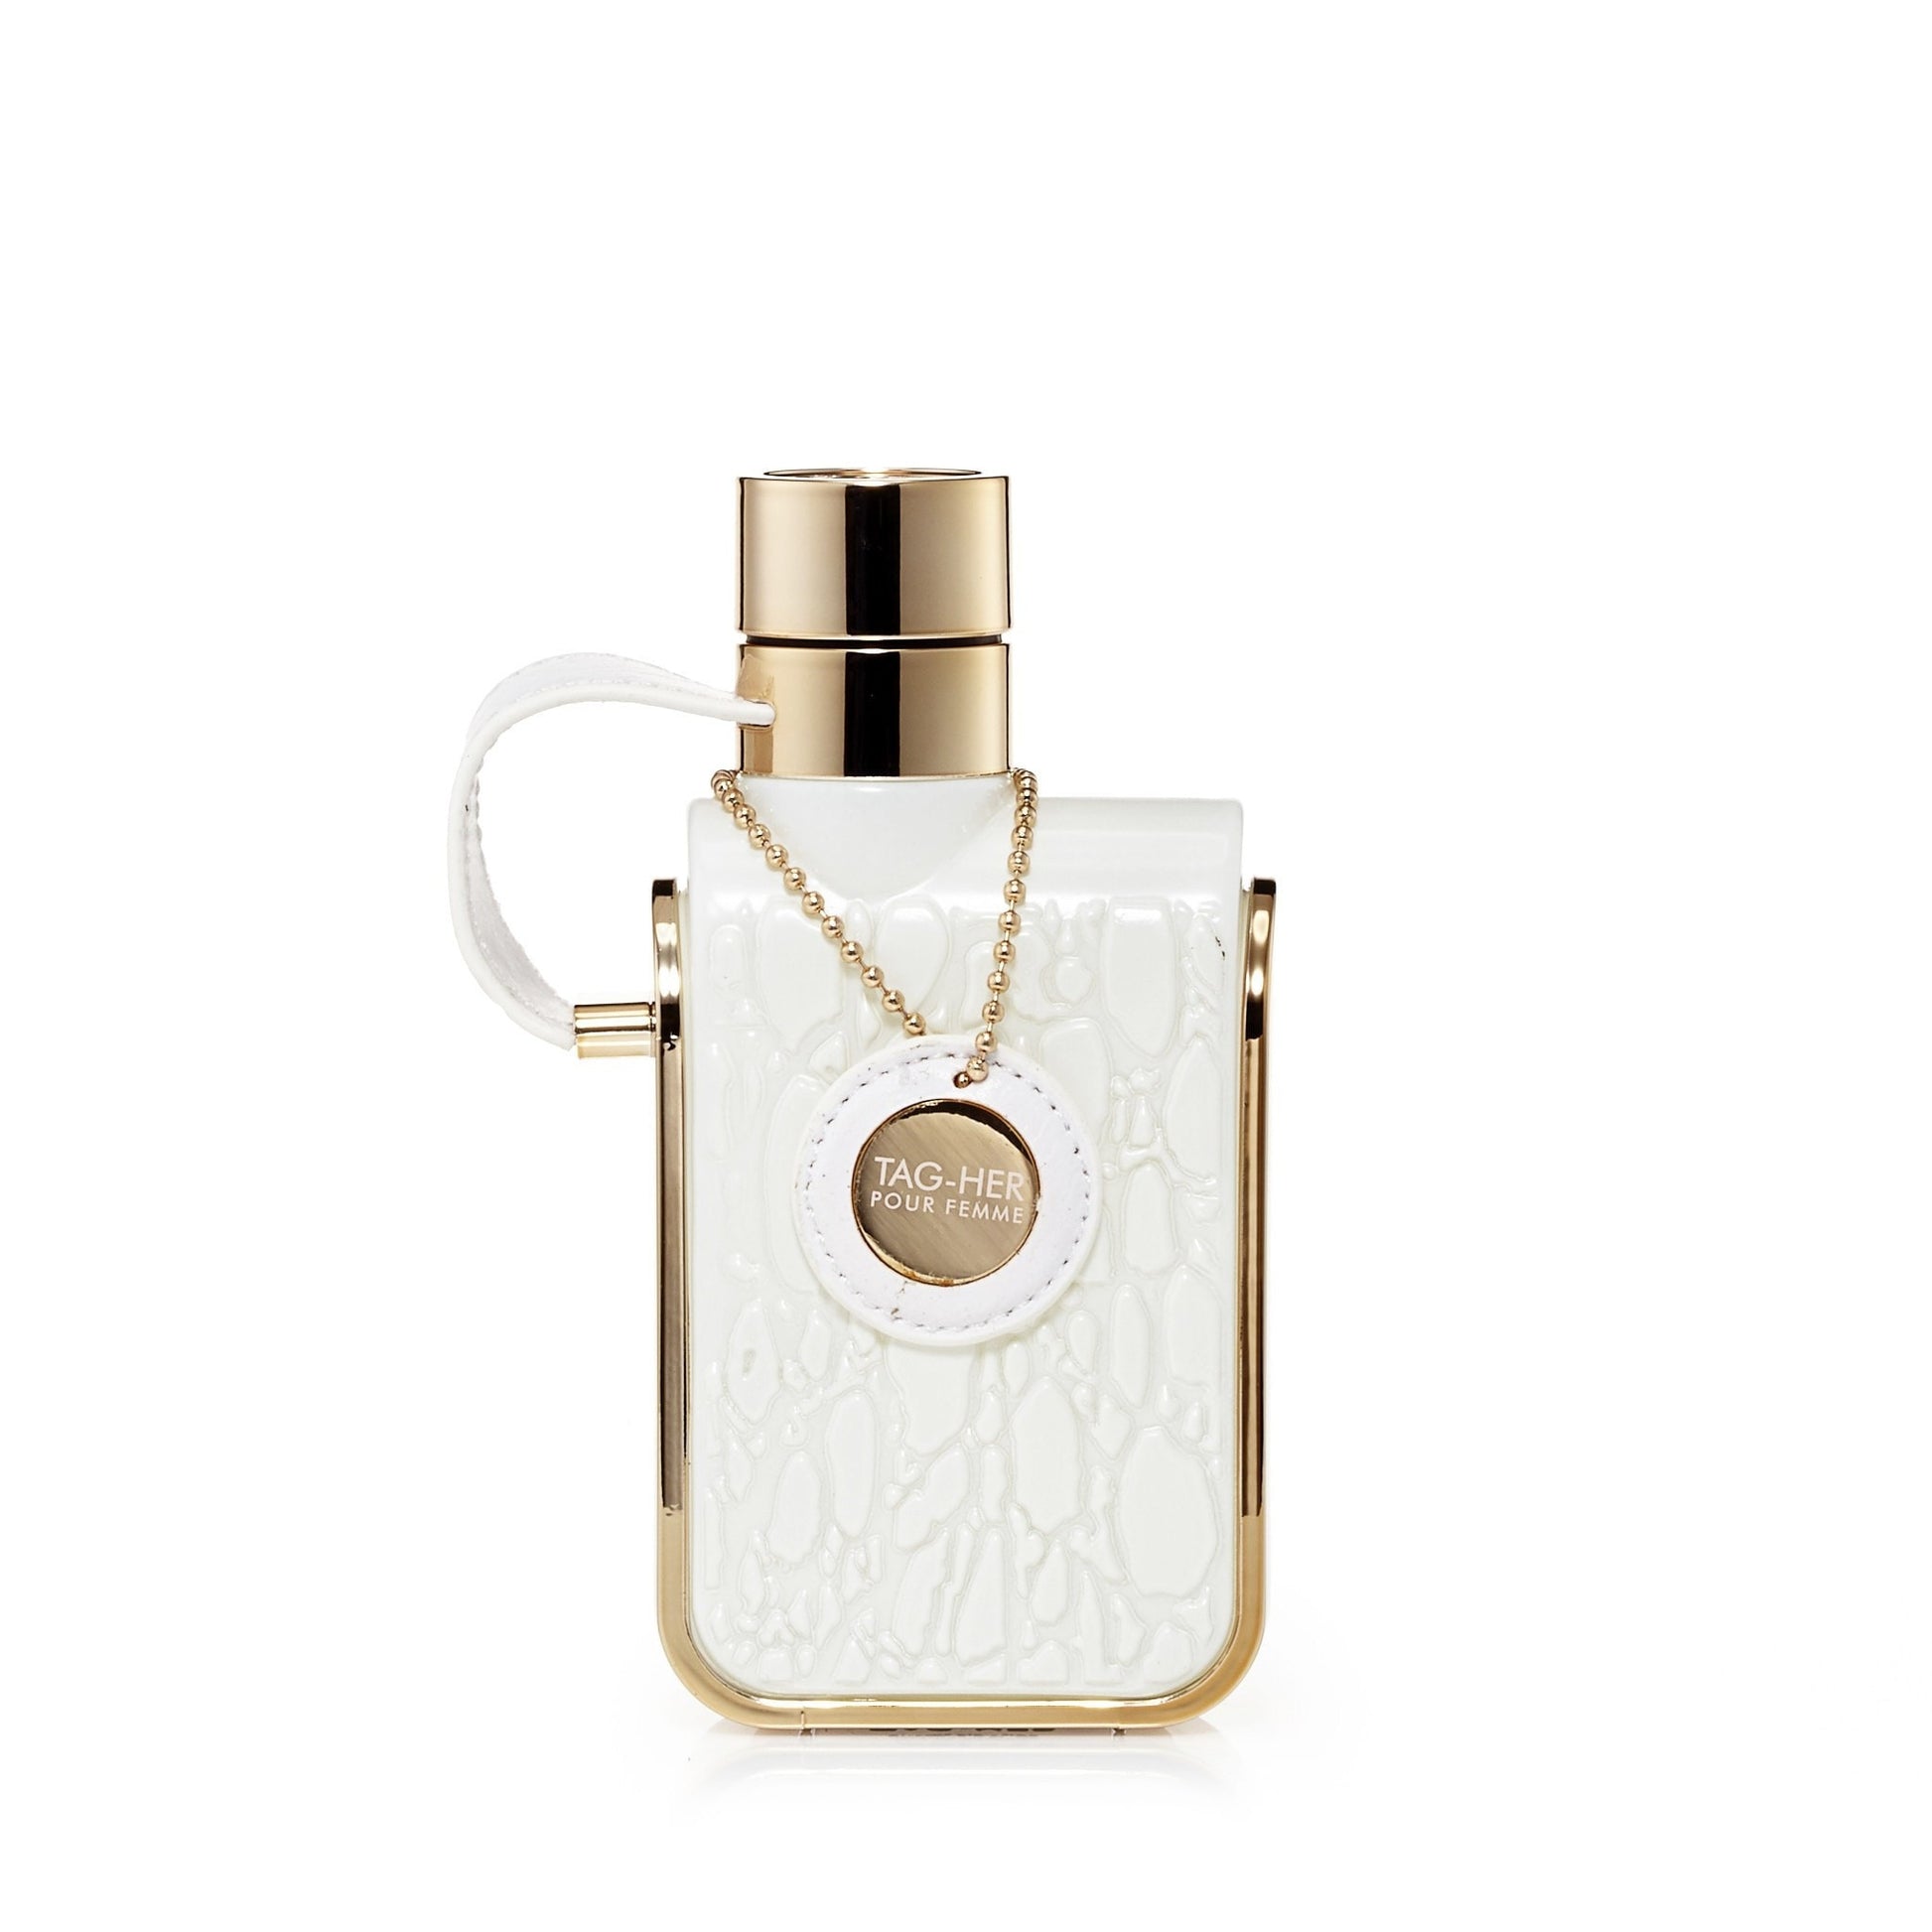 Tag Her Eau de Parfum Womens Spray 3.4 oz. Click to open in modal